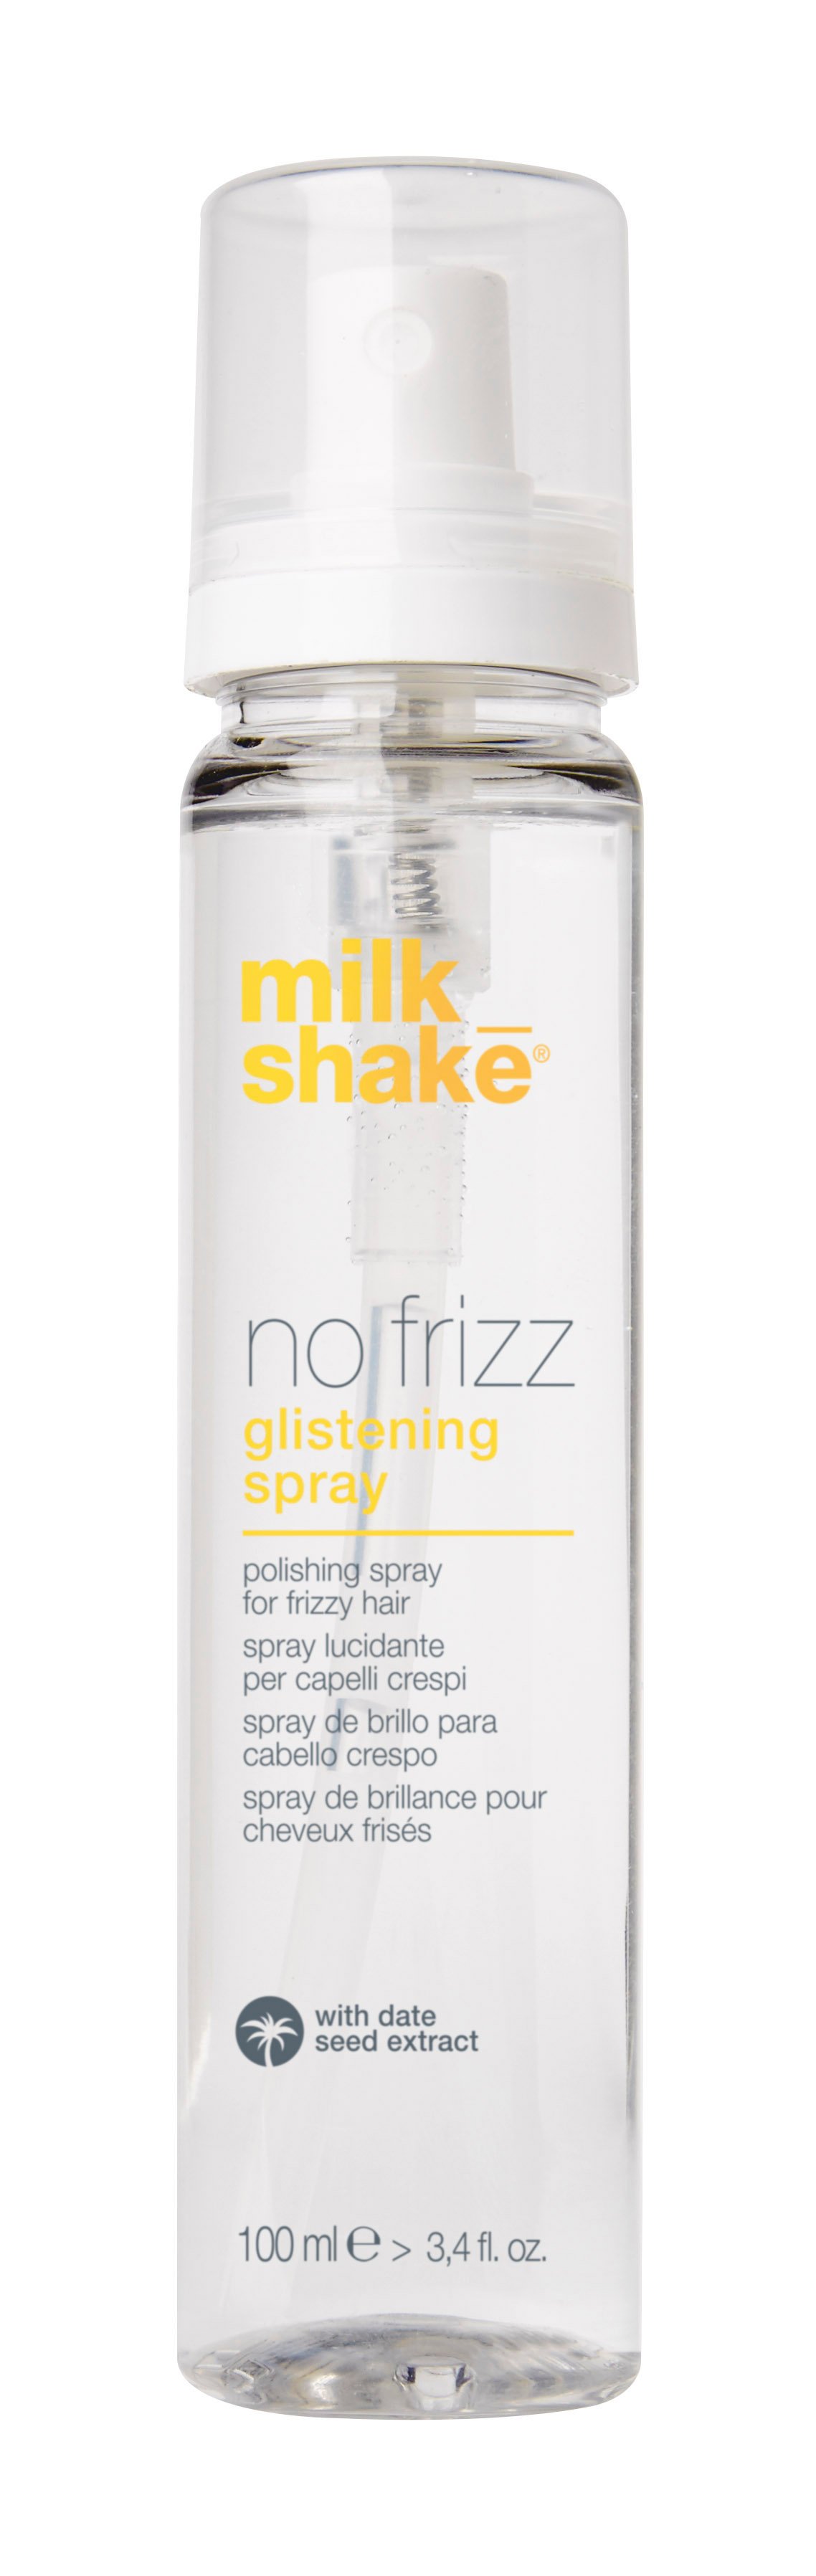 milk_shake - No Frizz Glistening Spray 100 ml - Skjønnhet